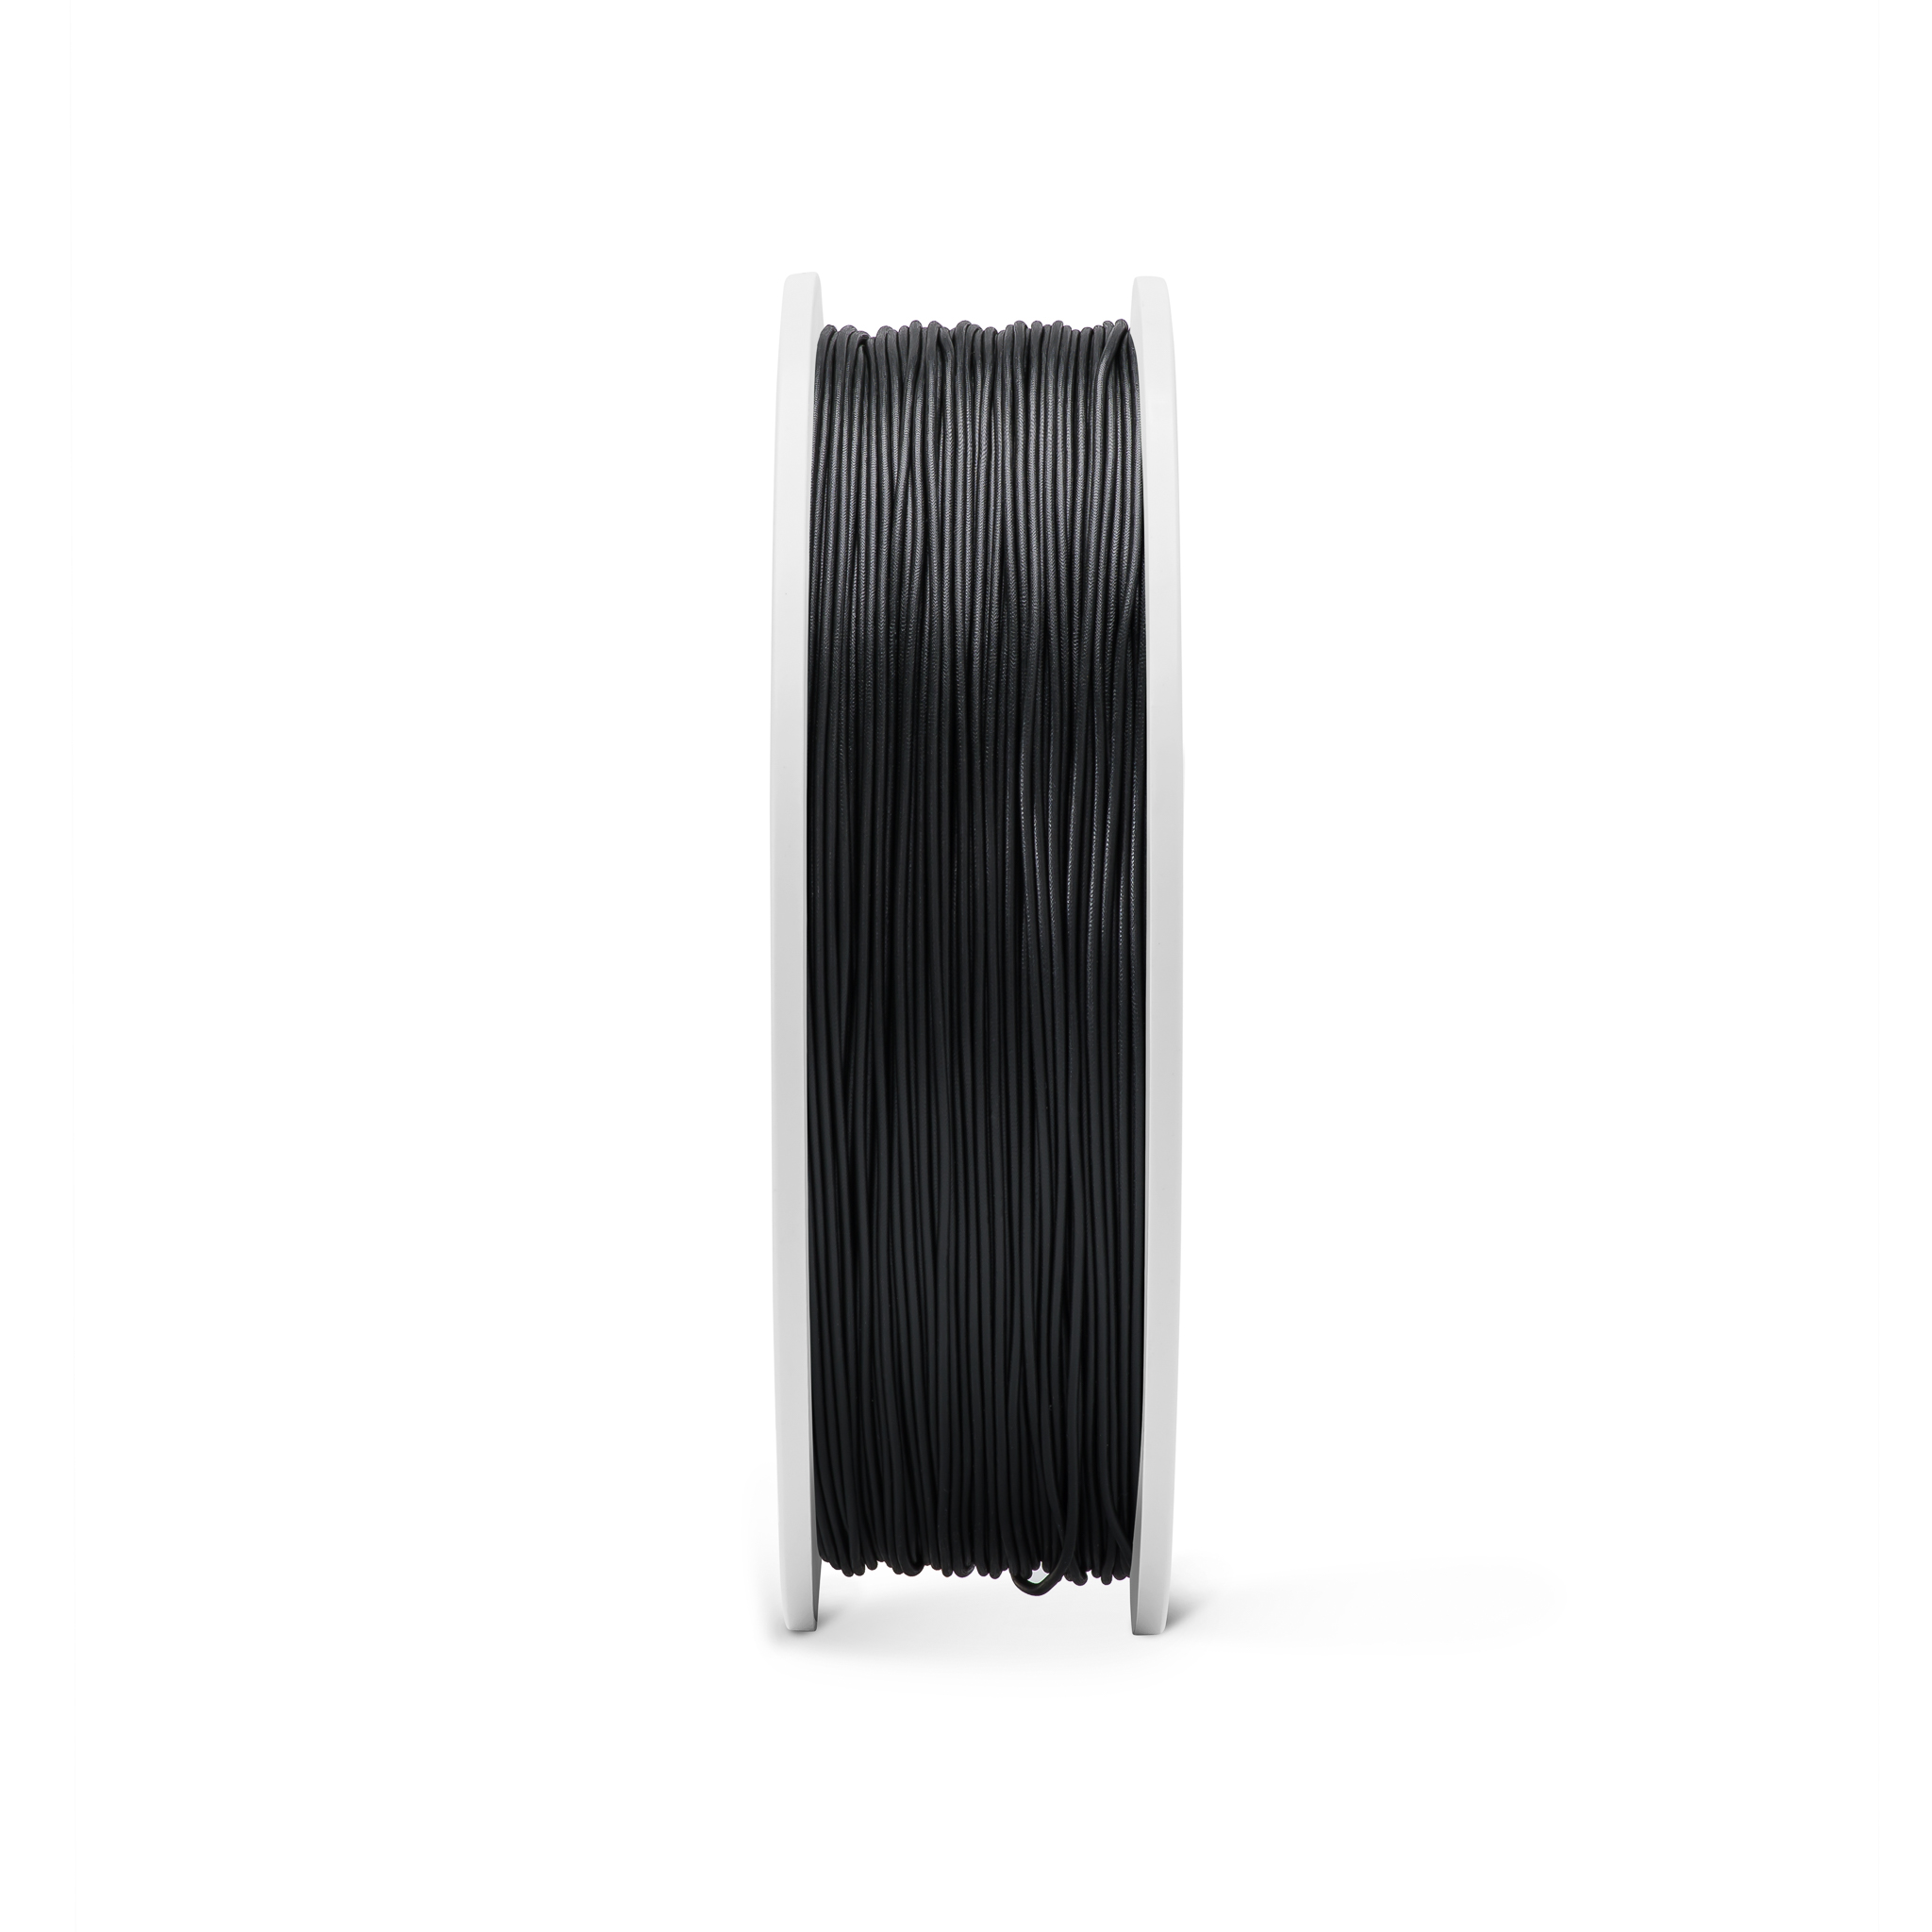 Fiberlogy FIBERFLEX 30D flexibles Filament 1,75 mm